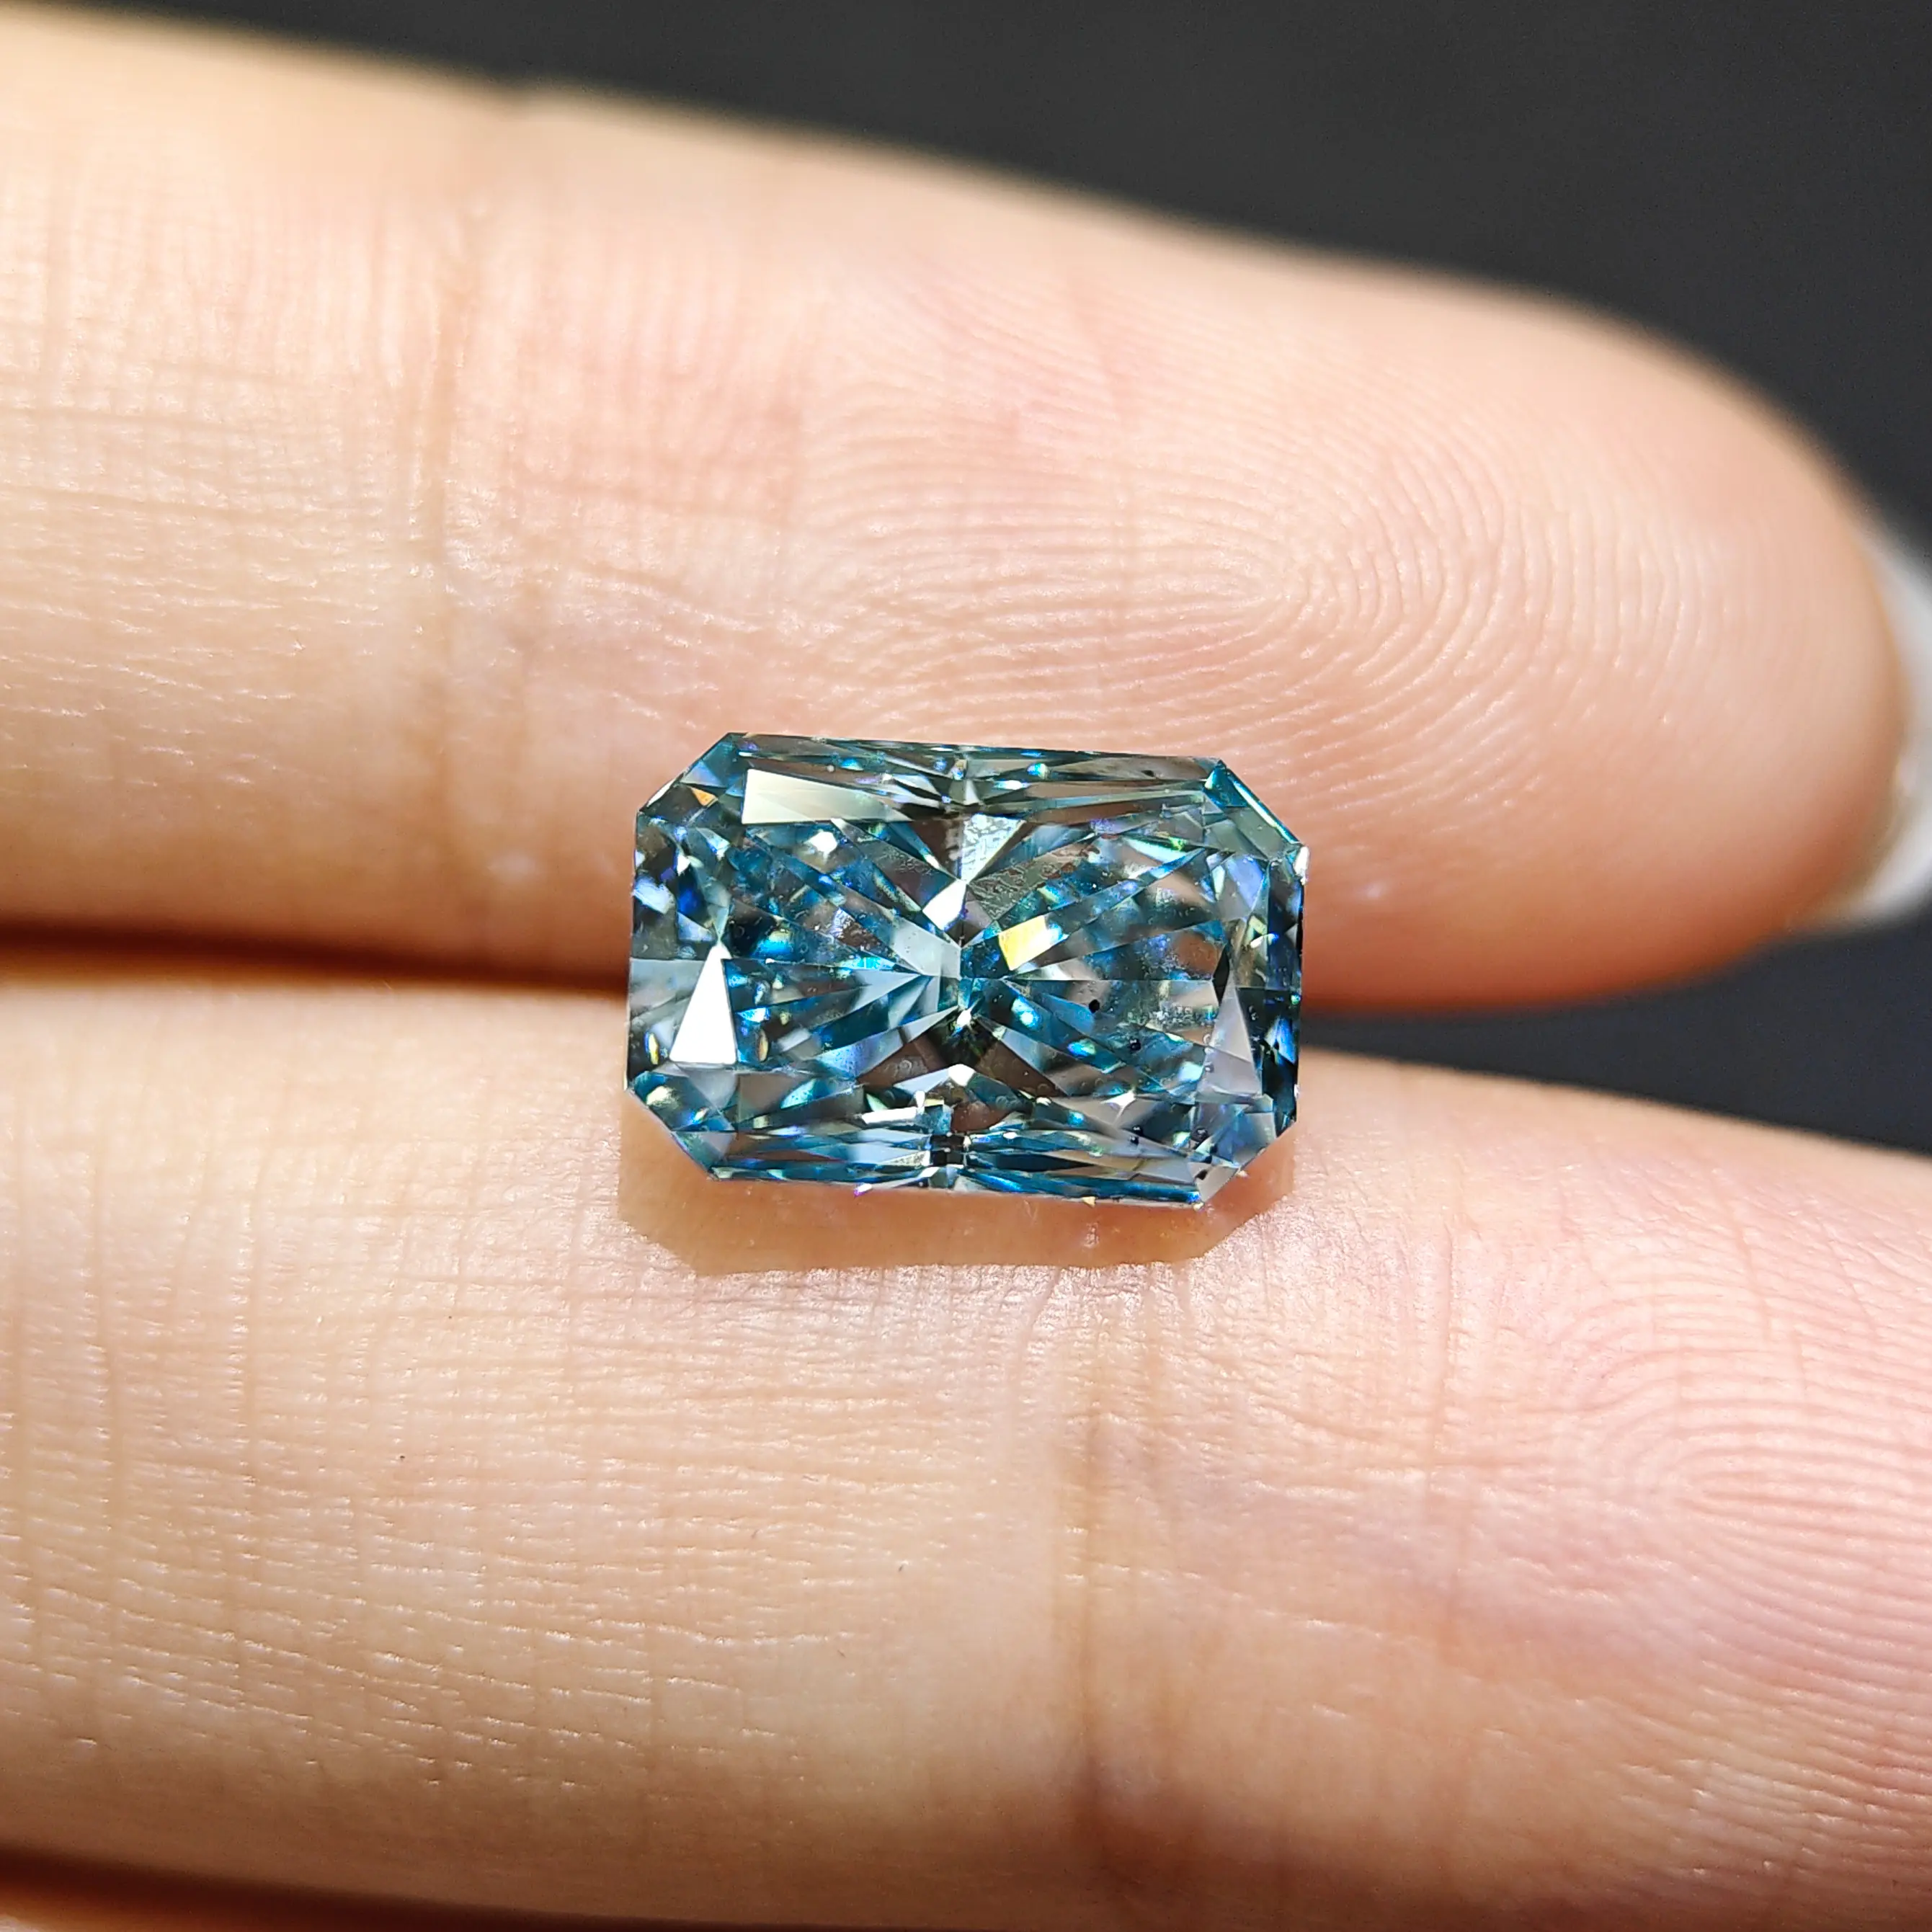 Diamante de laboratório de cultivo de diamante azul intenso fantasia Certificado IGI GIA 4.08ct Diamante criado por laboratório por atacado HPHT CVD Diamante cultivado em laboratório